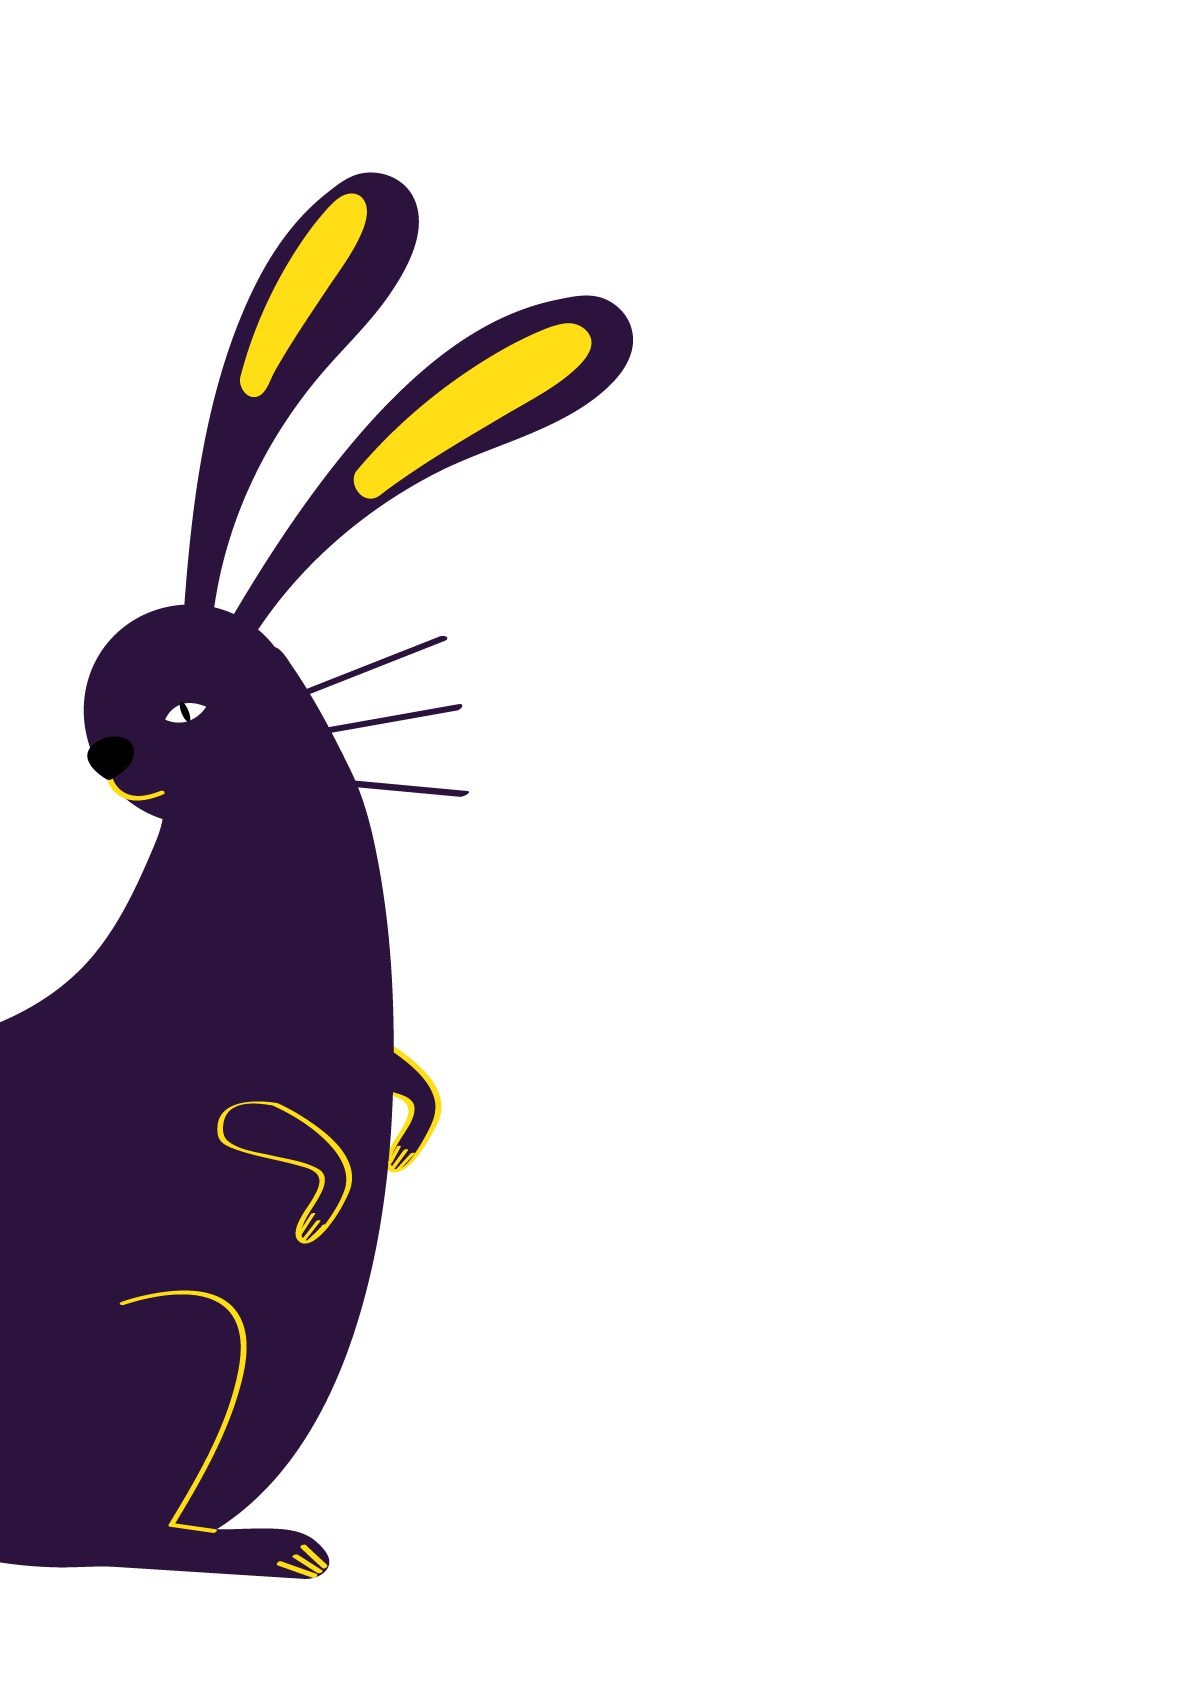 Chinese Horoscope Year of the Rabbit